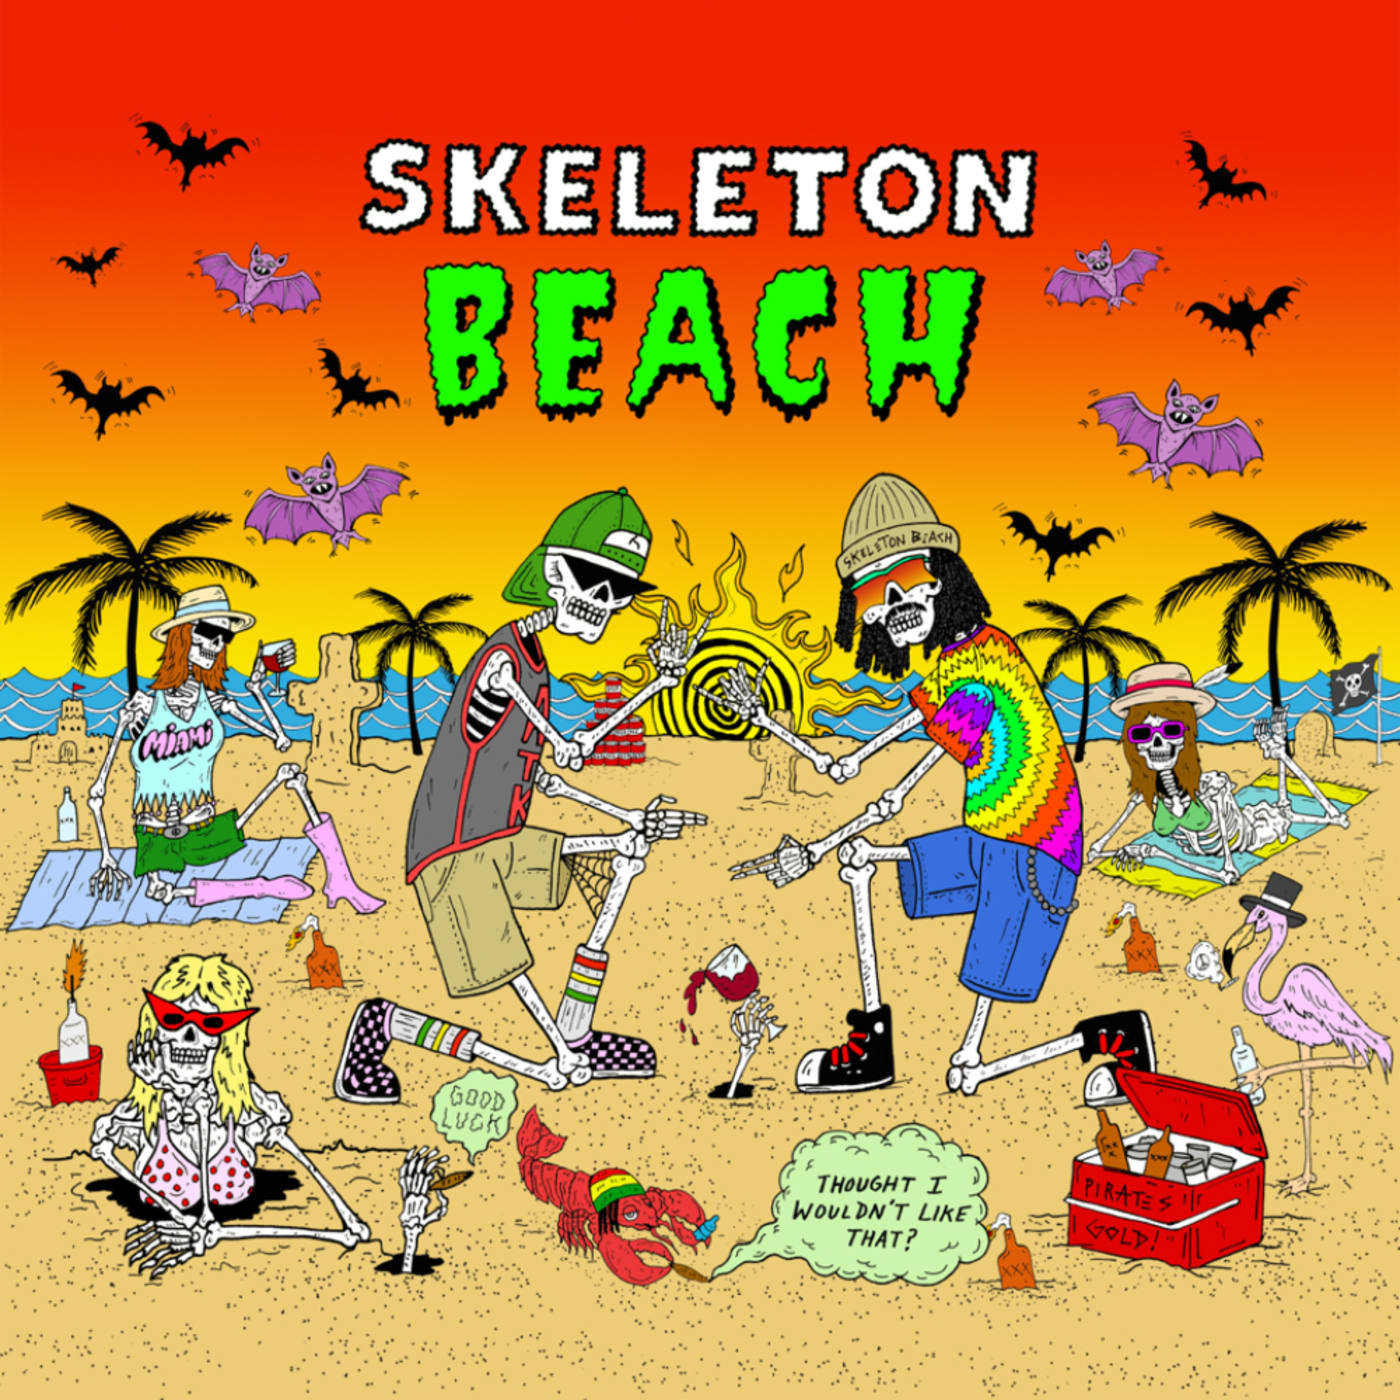 Skeleton Beach cover art for new single